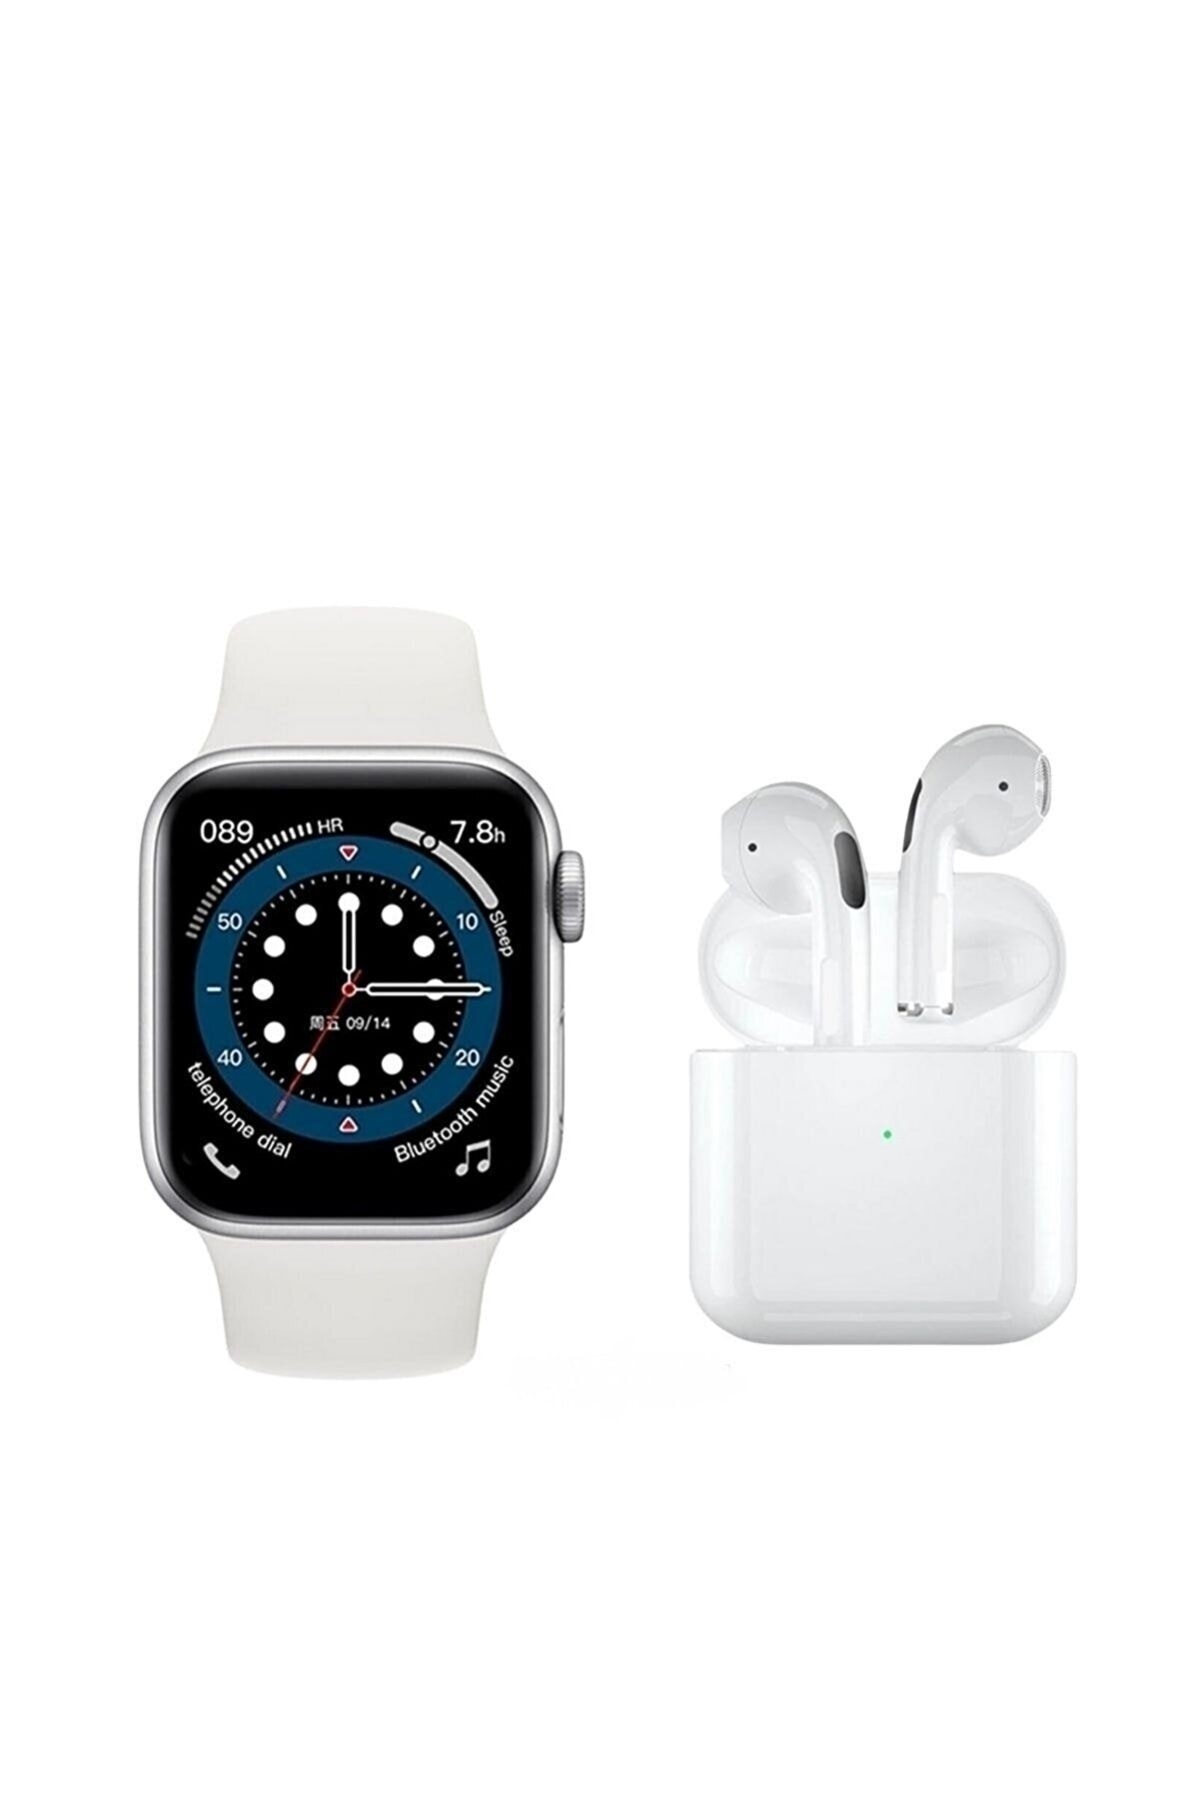 NS Store Watch 6 Serisi Yeni Nesil Akıllı Saat + Pro5 Kablosuz Kulaklık Iphone 11 Uyumlu